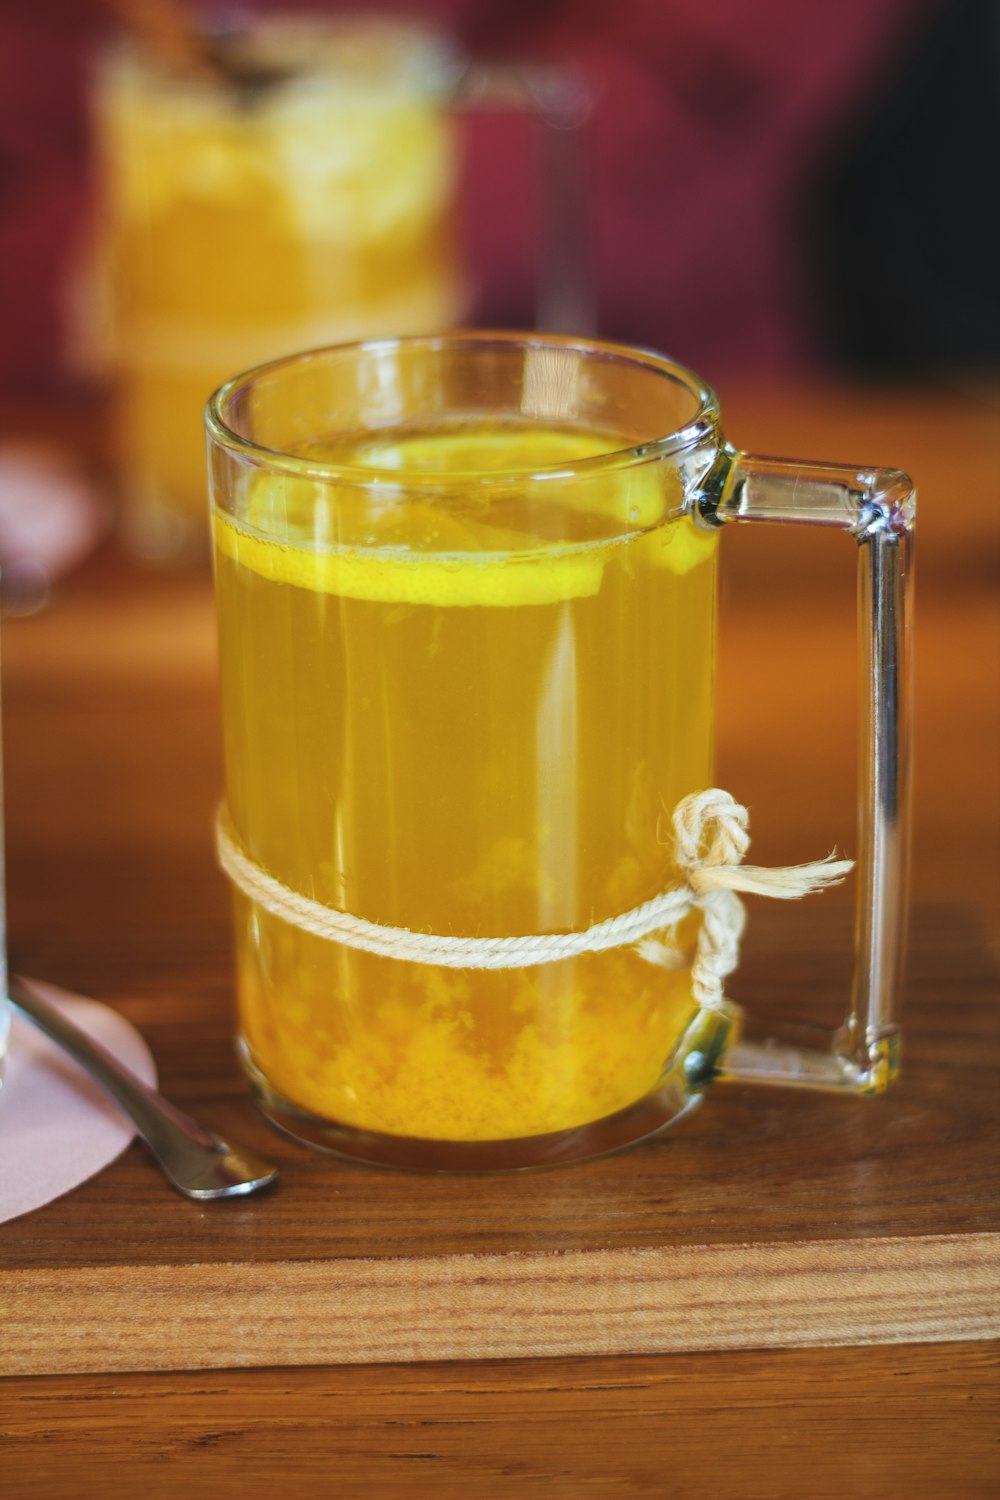 clear glass mug with yellow liquid